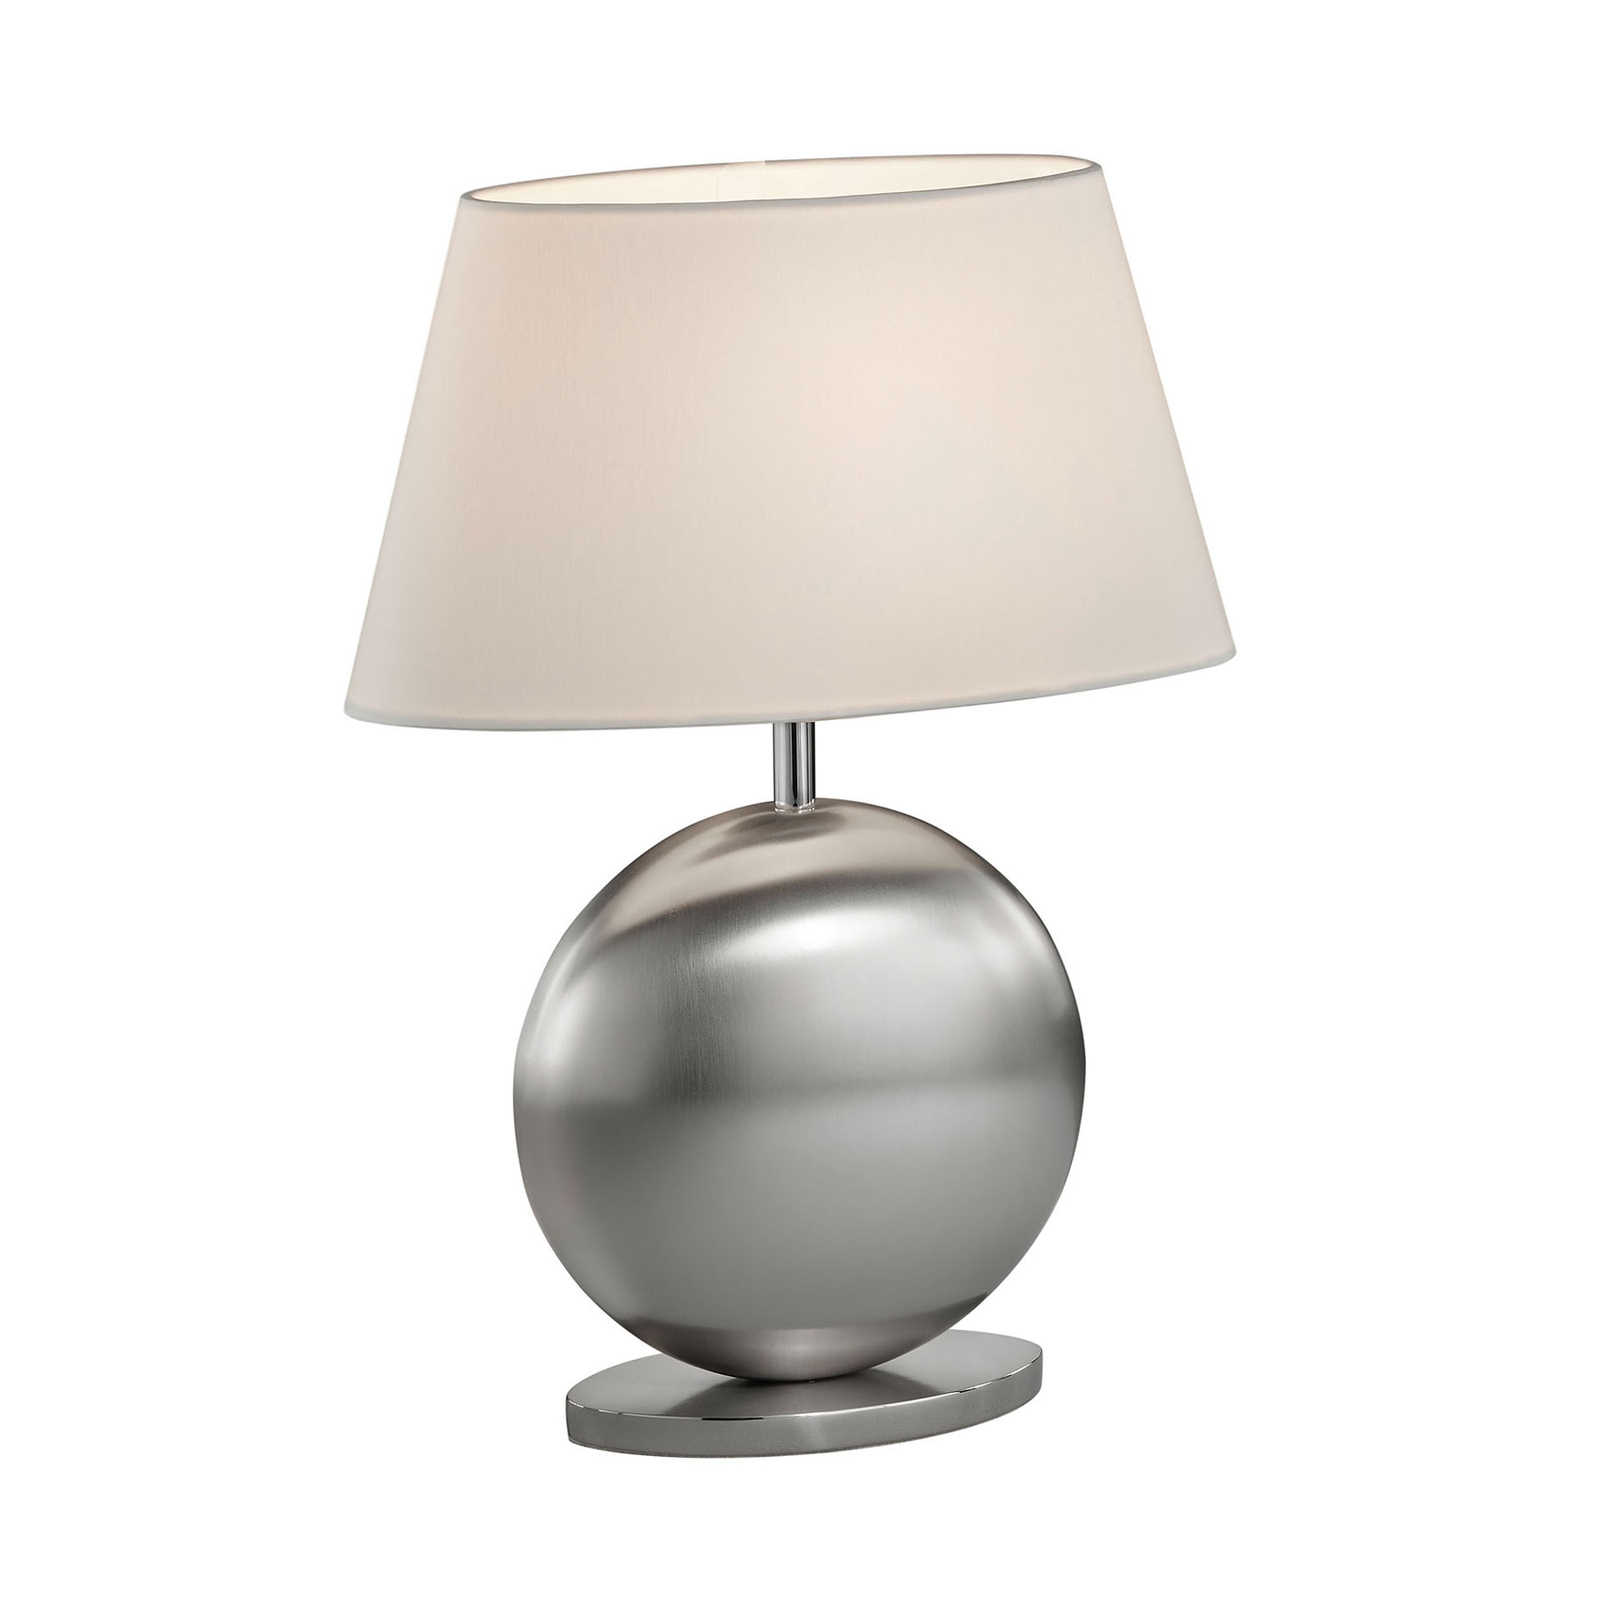 BANKAMP Asolo bordlampe, hvit/nikkel, høyde 41 cm